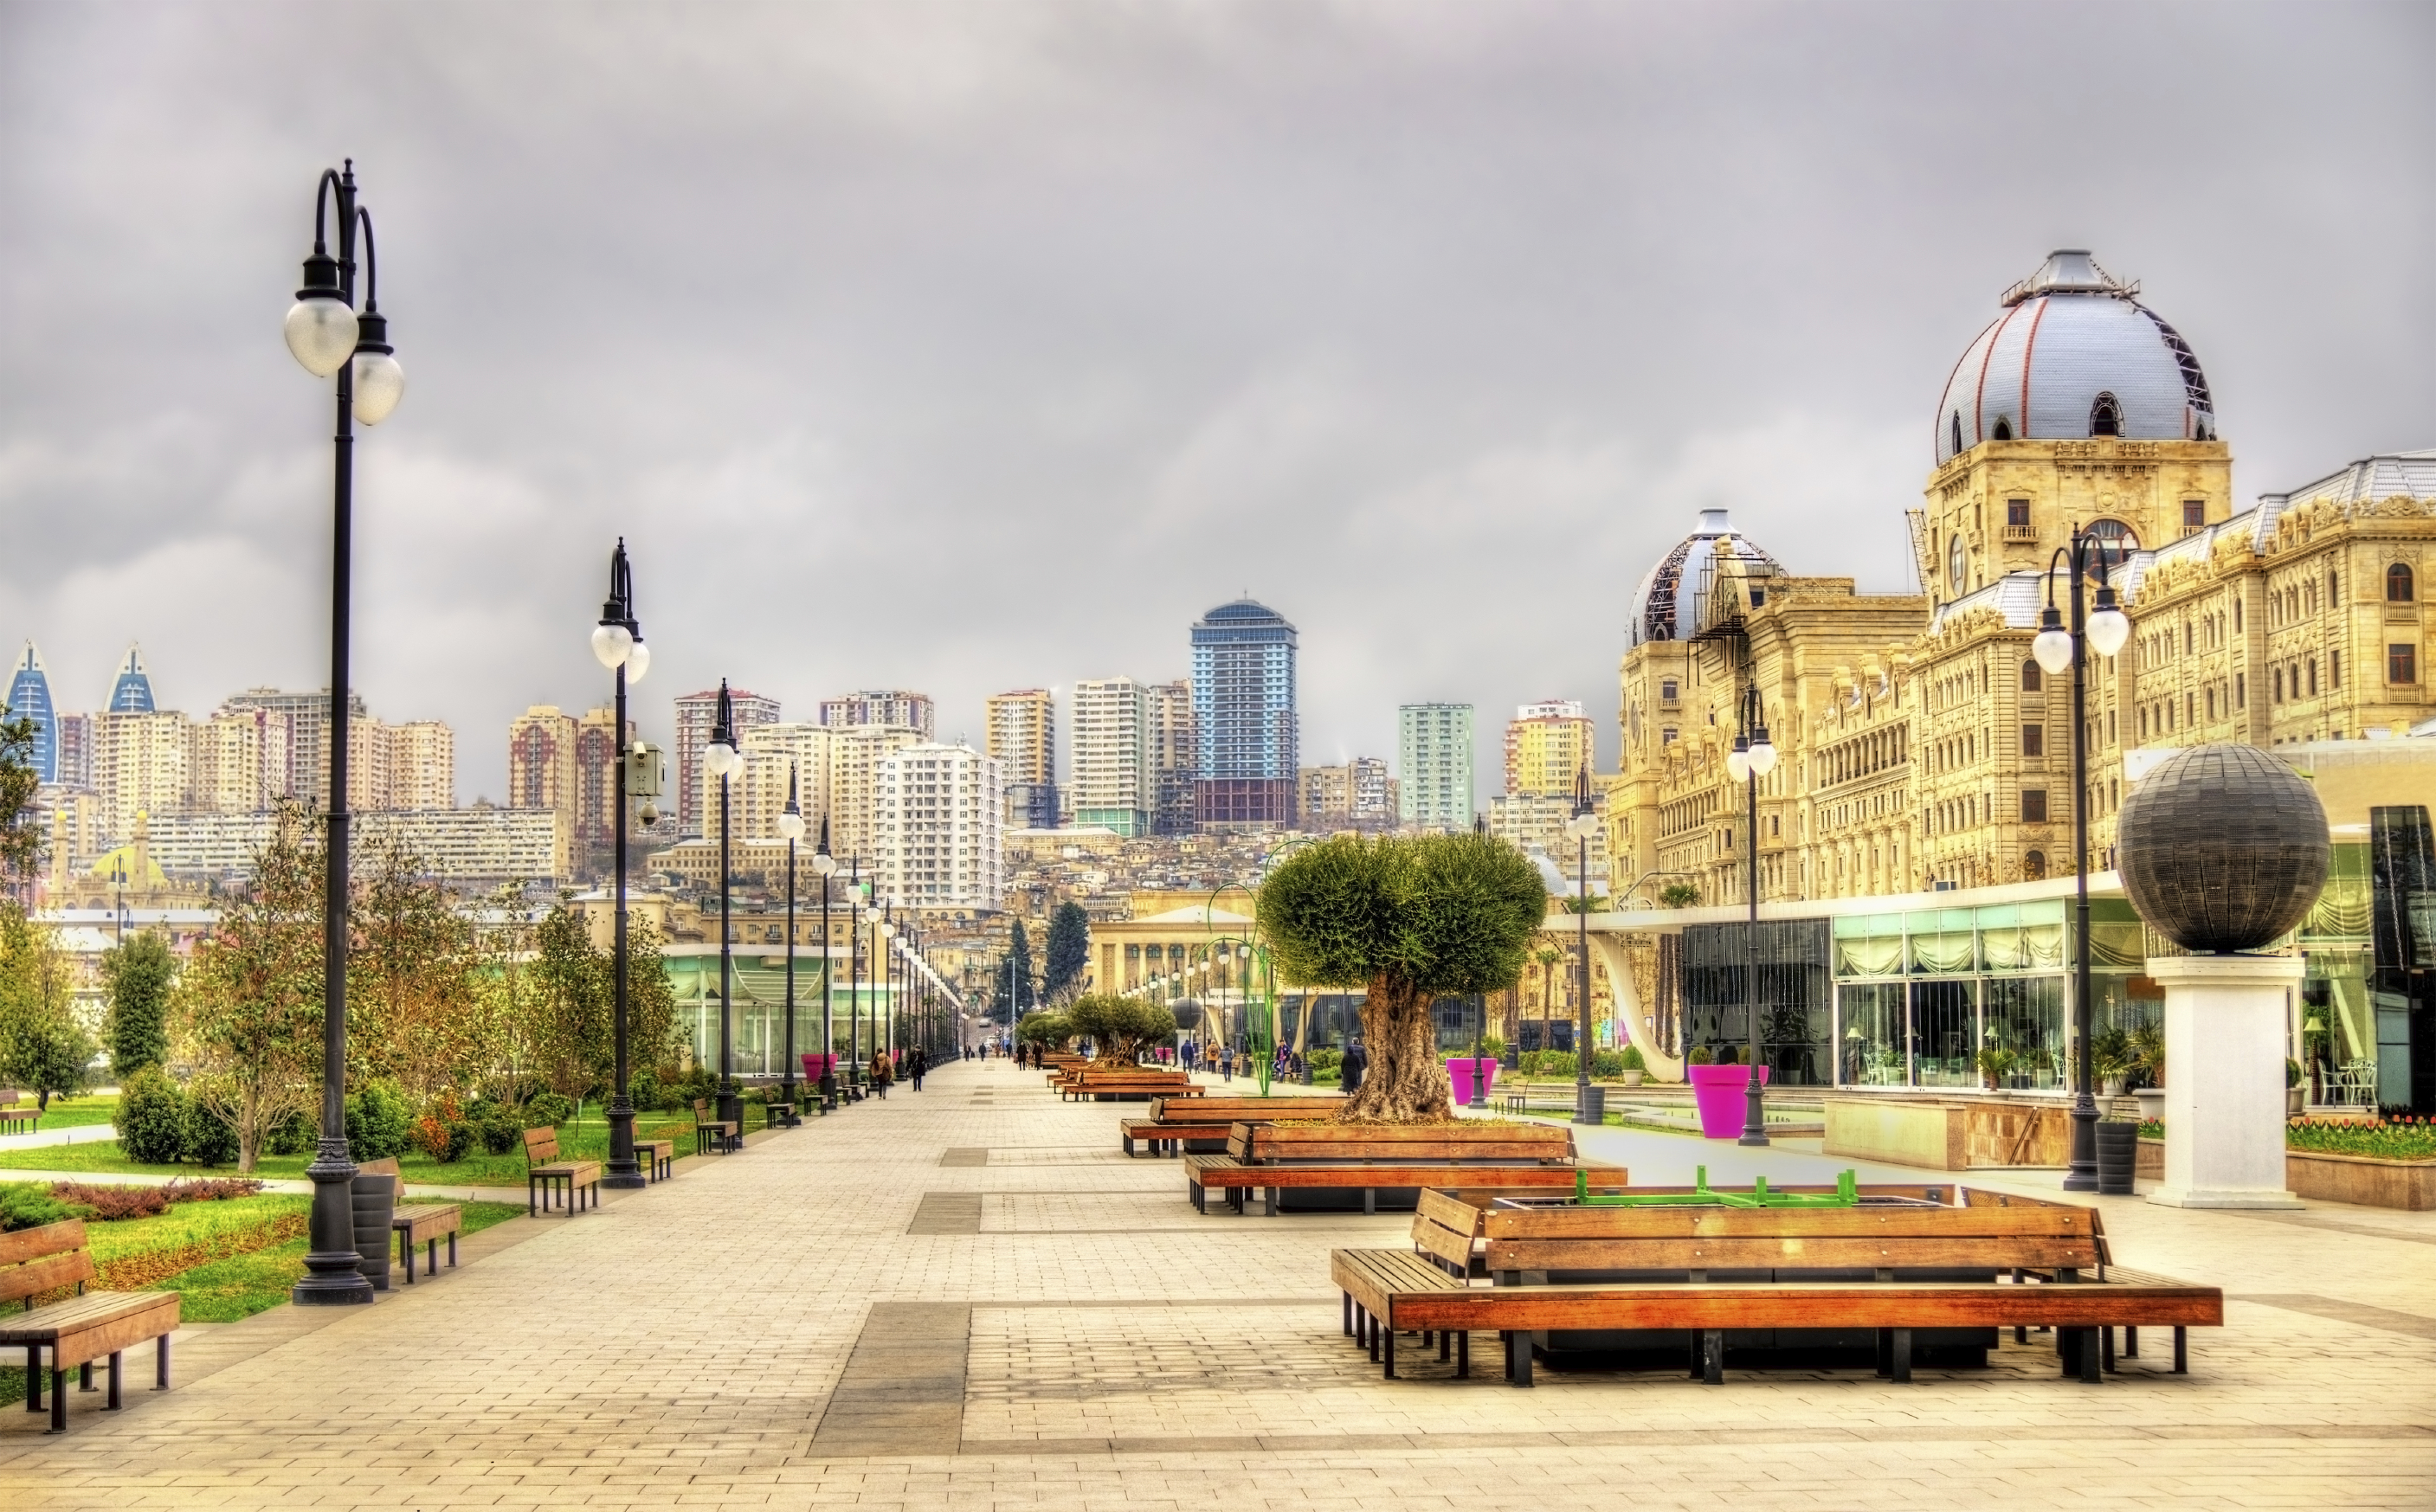 Baku Backgrounds, Compatible - PC, Mobile, Gadgets| 2814x1747 px